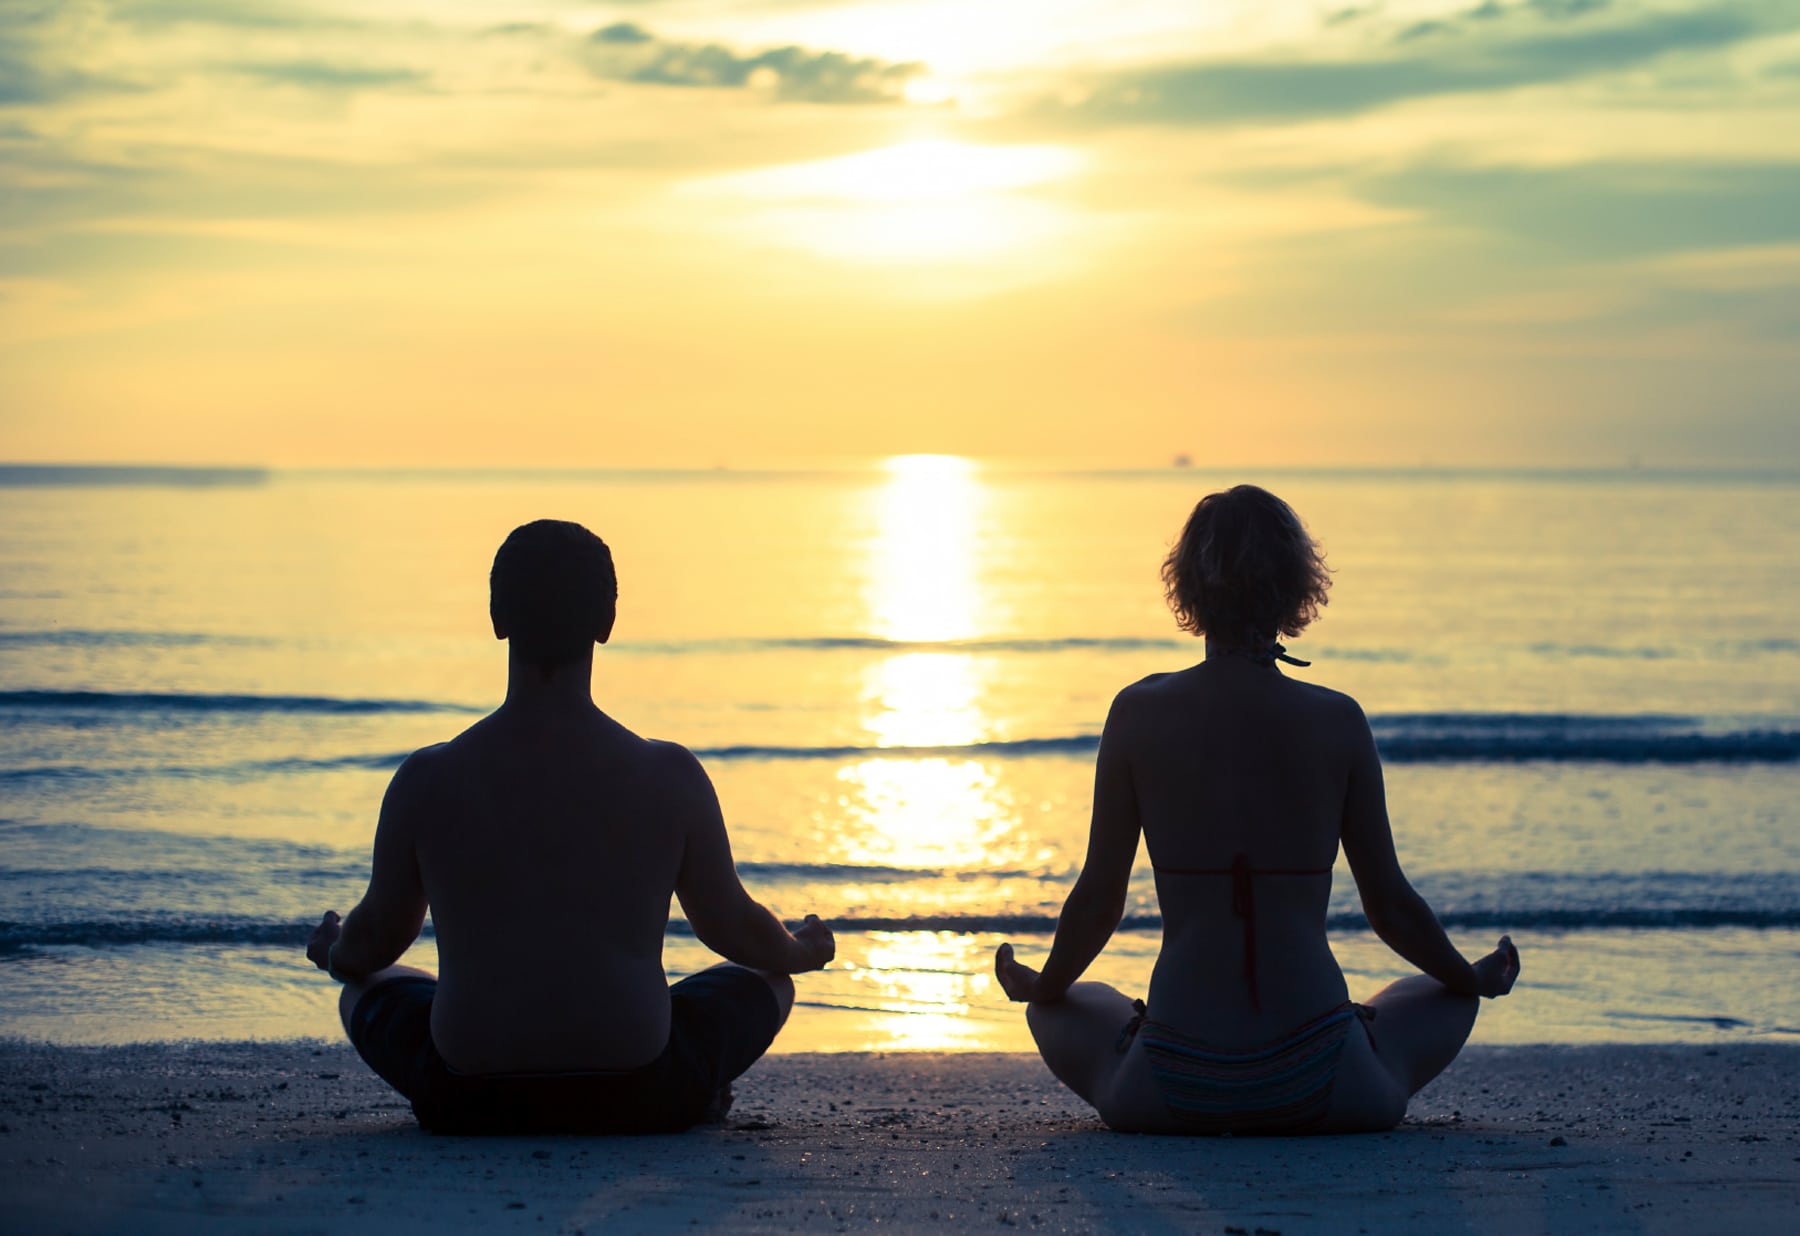 Duas pessoas sentadas de frente par ao mar meditam em posição de lotus.